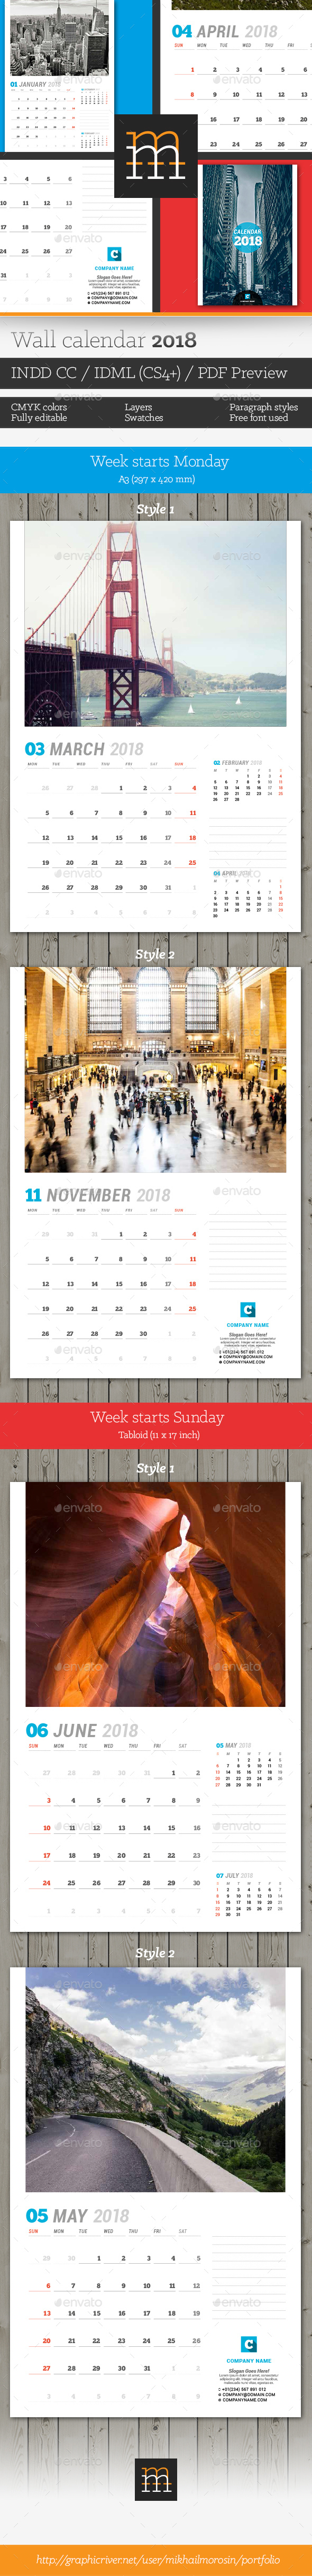 Wall Calendar 2018